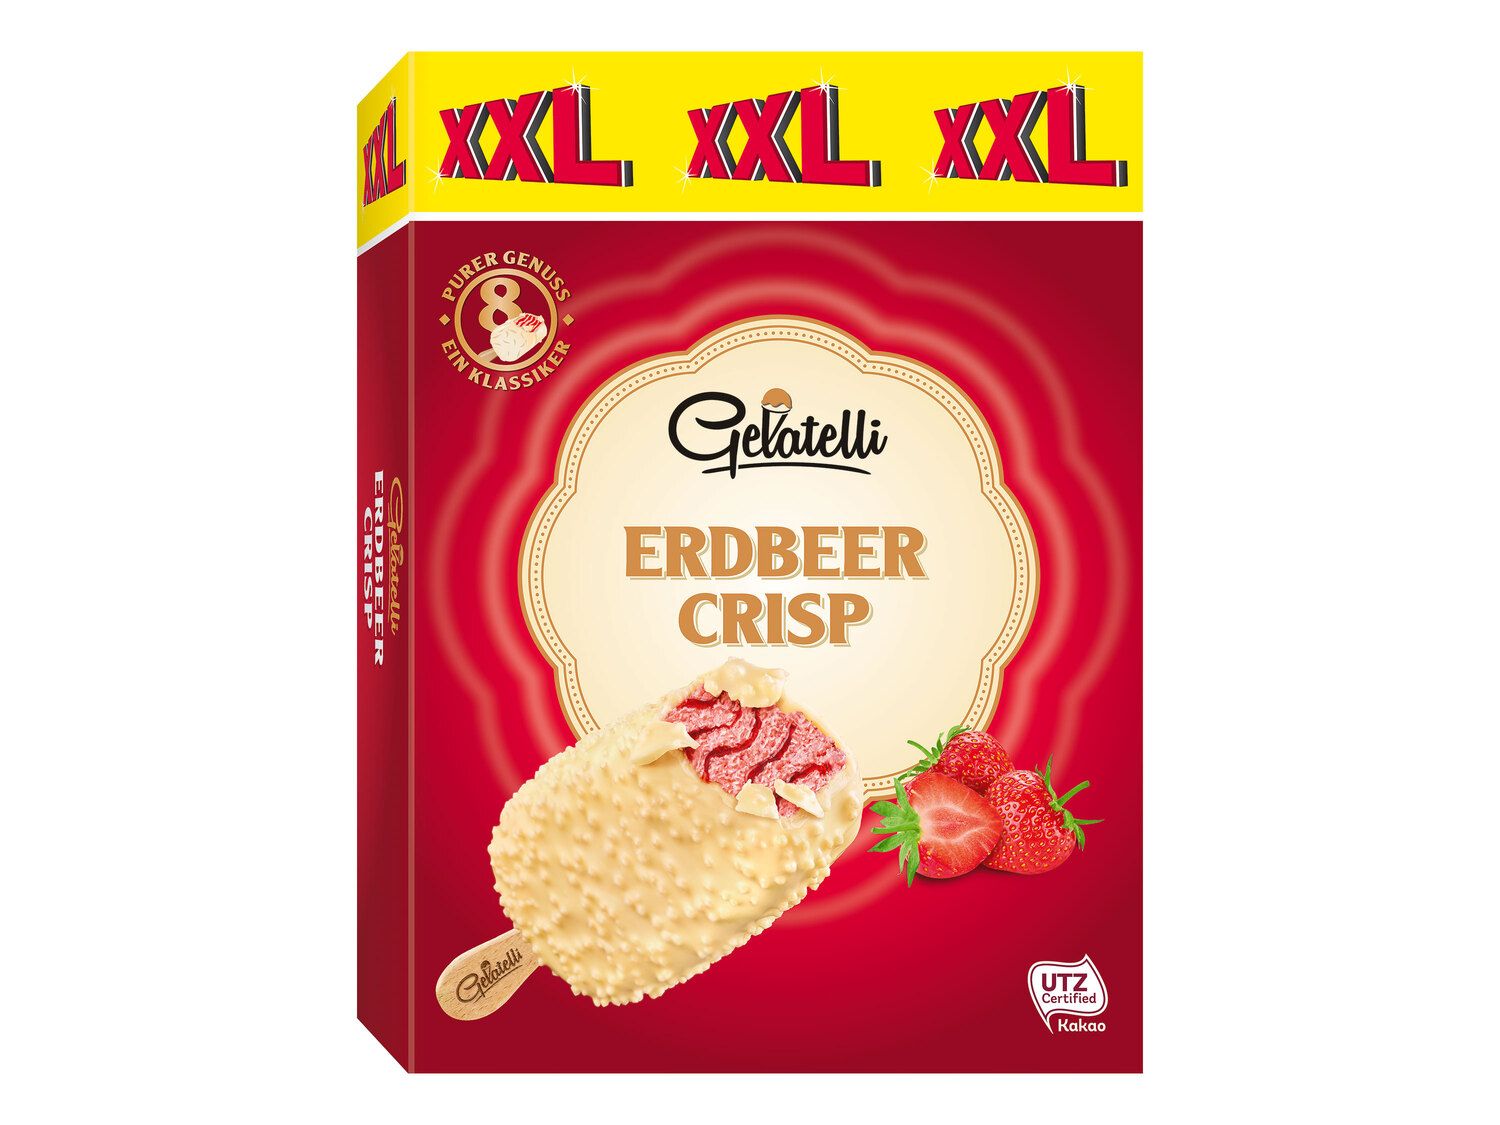 Gelatelli Stieleis Crisp Erdbeer XXL Deutschland Lidl 